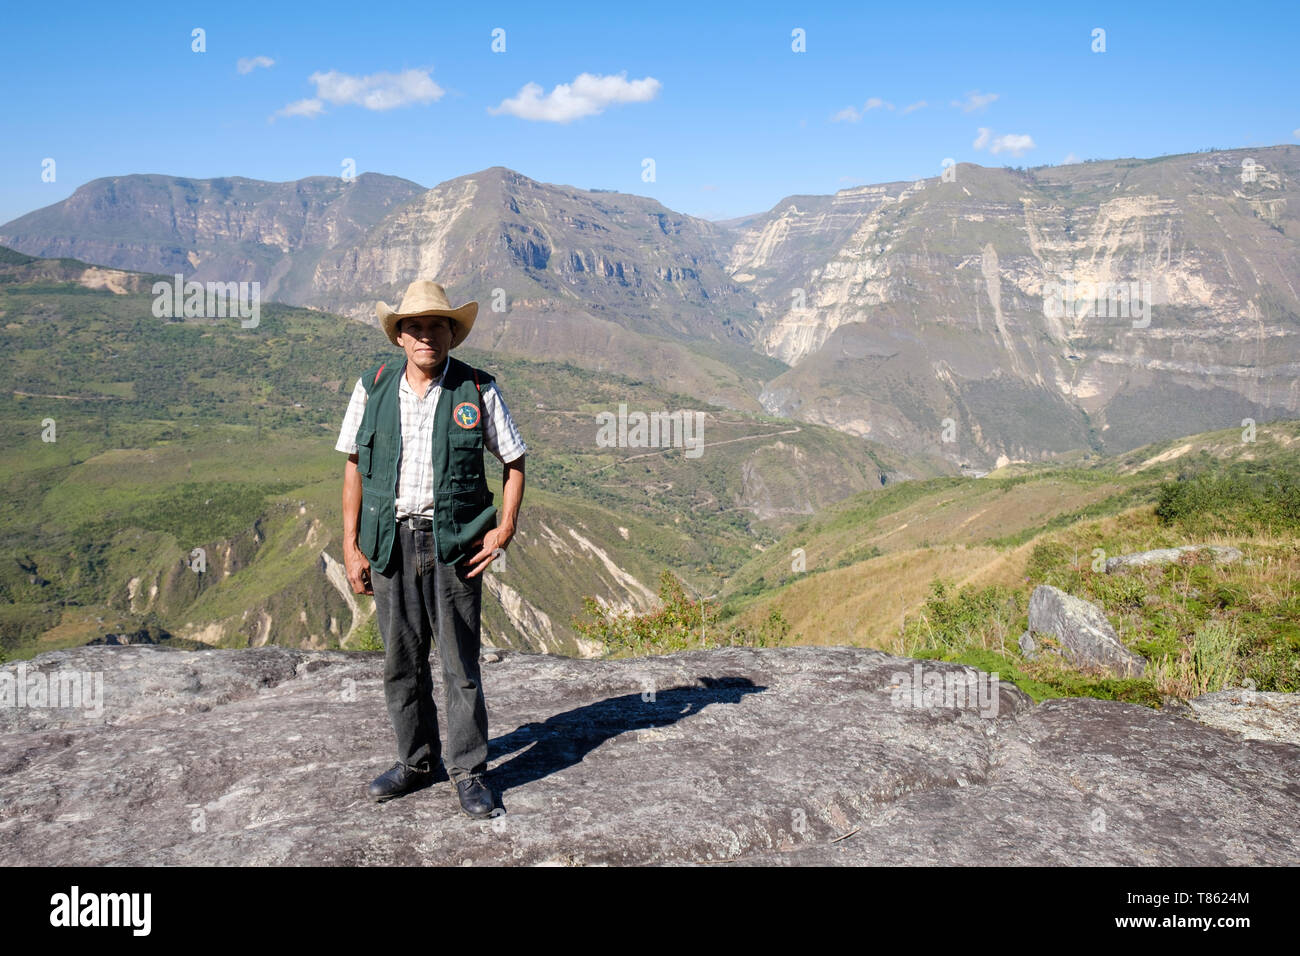 Portrait der lokalen Führer namens Antonio bei der Suche die beeindruckende Landschaft während der gocta Wasserfall Wanderung in der Provinz Chachapoyas, Peru zu bewundern. Stockfoto